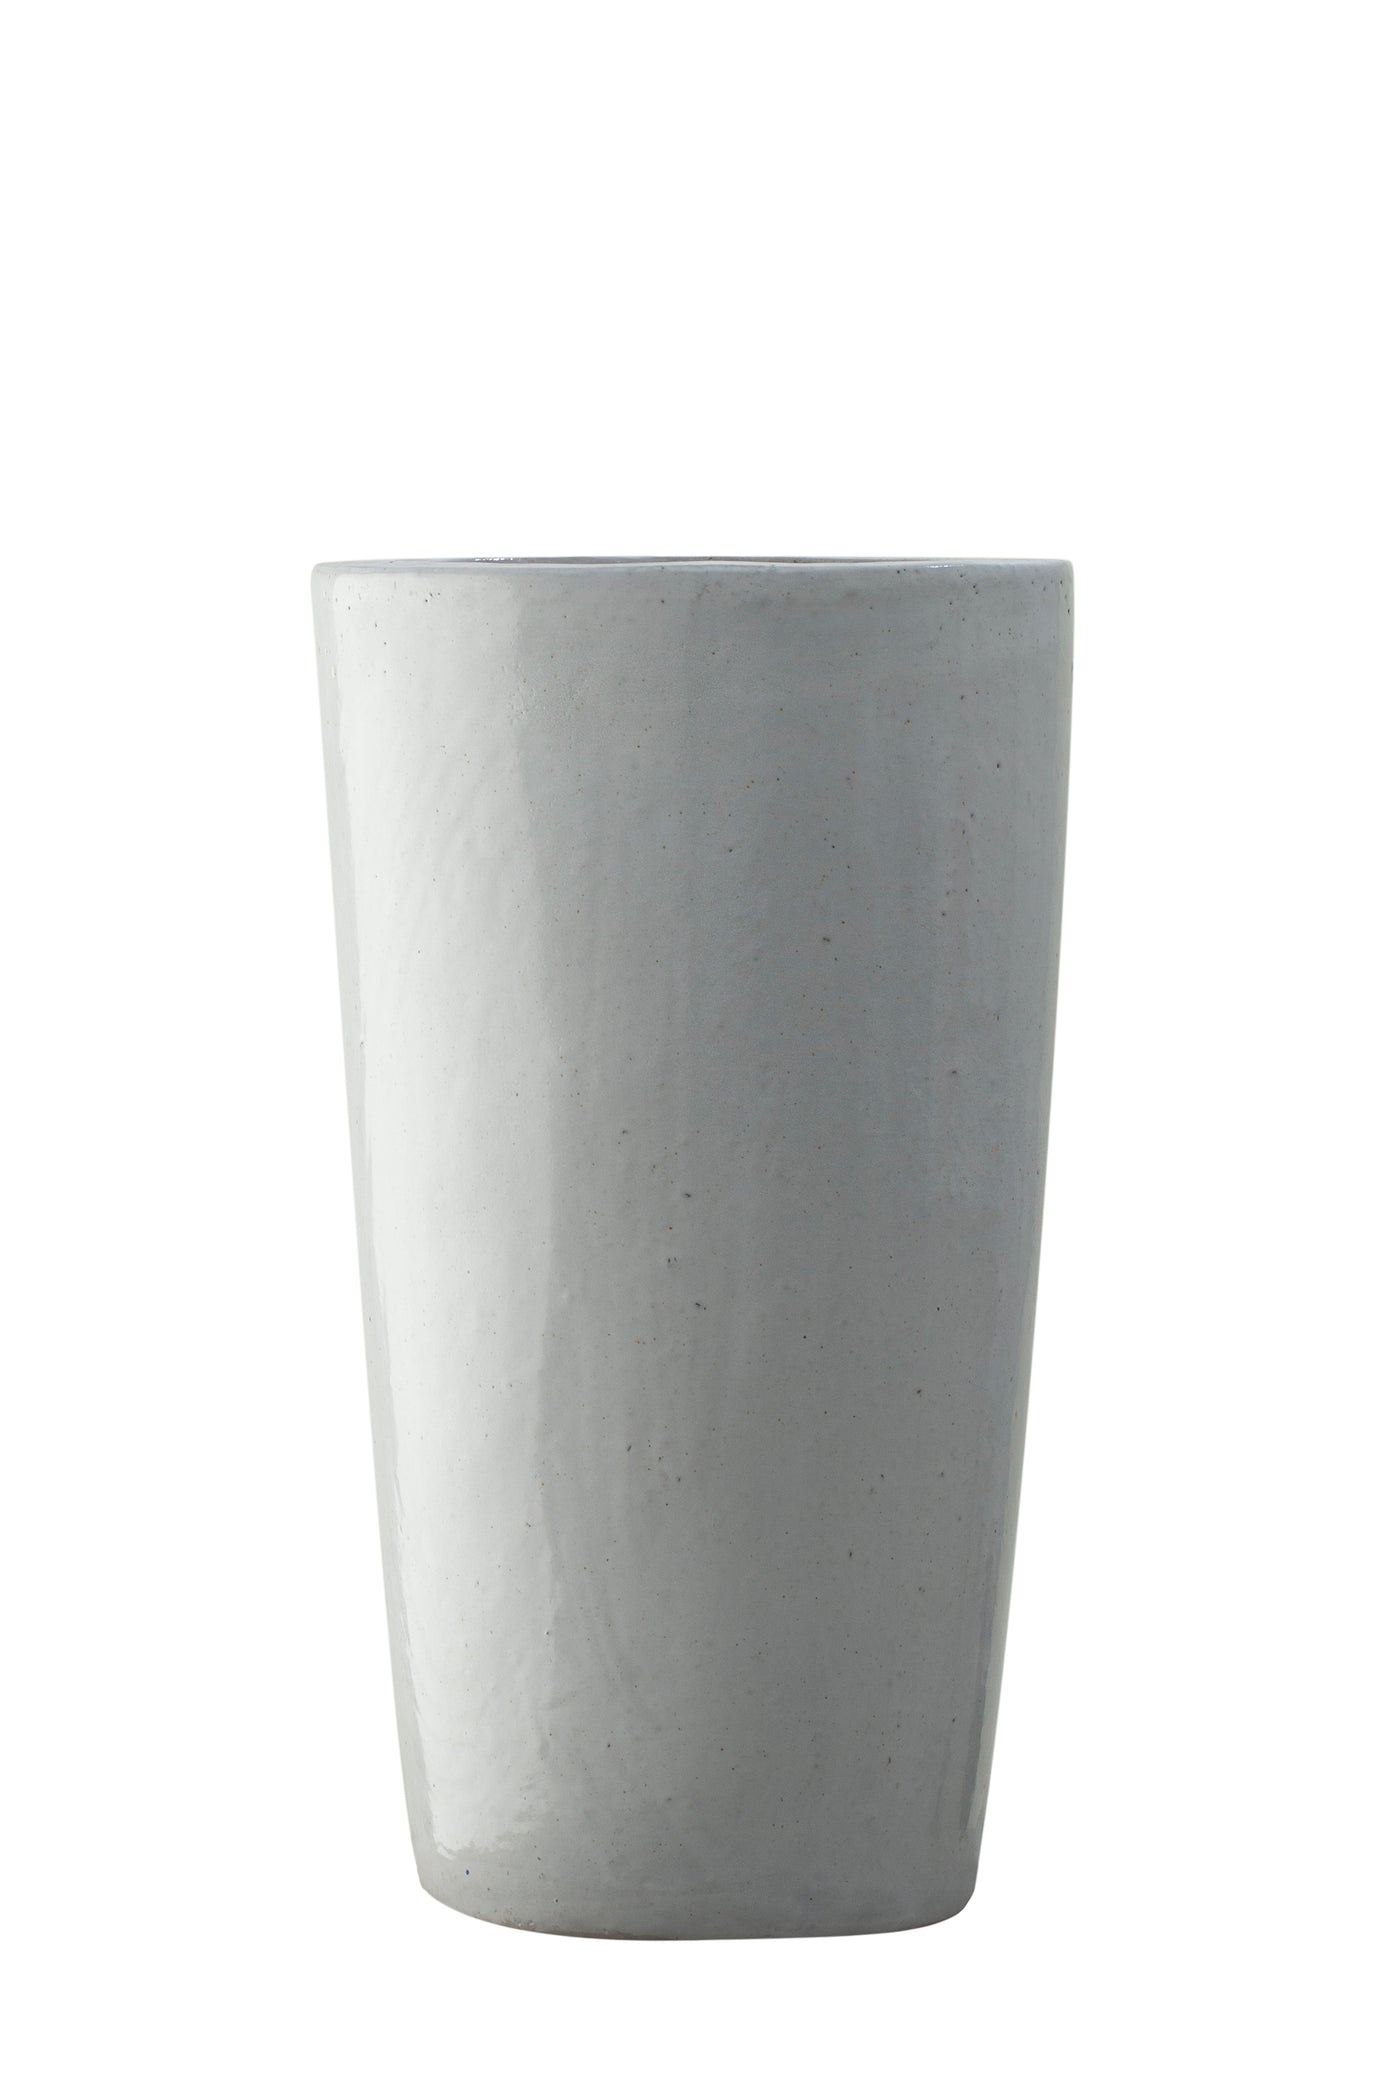 Ghiveci plante D33xH60 cm ceramic Partner, alb lucios